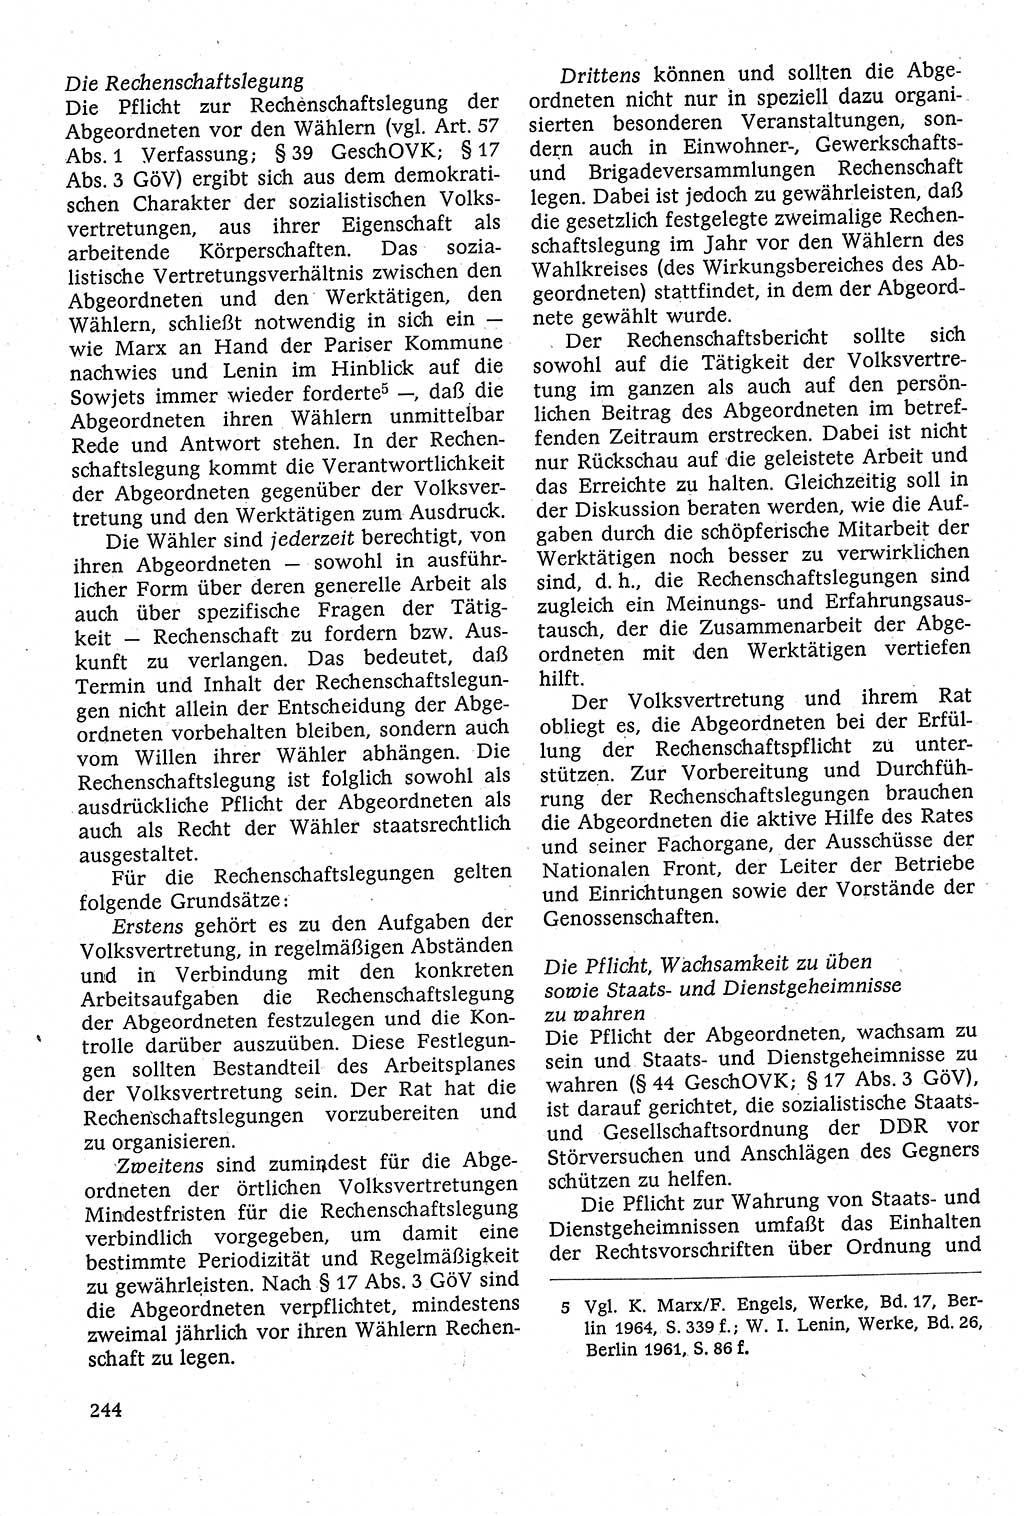 Staatsrecht der DDR [Deutsche Demokratische Republik (DDR)], Lehrbuch 1984, Seite 244 (St.-R. DDR Lb. 1984, S. 244)